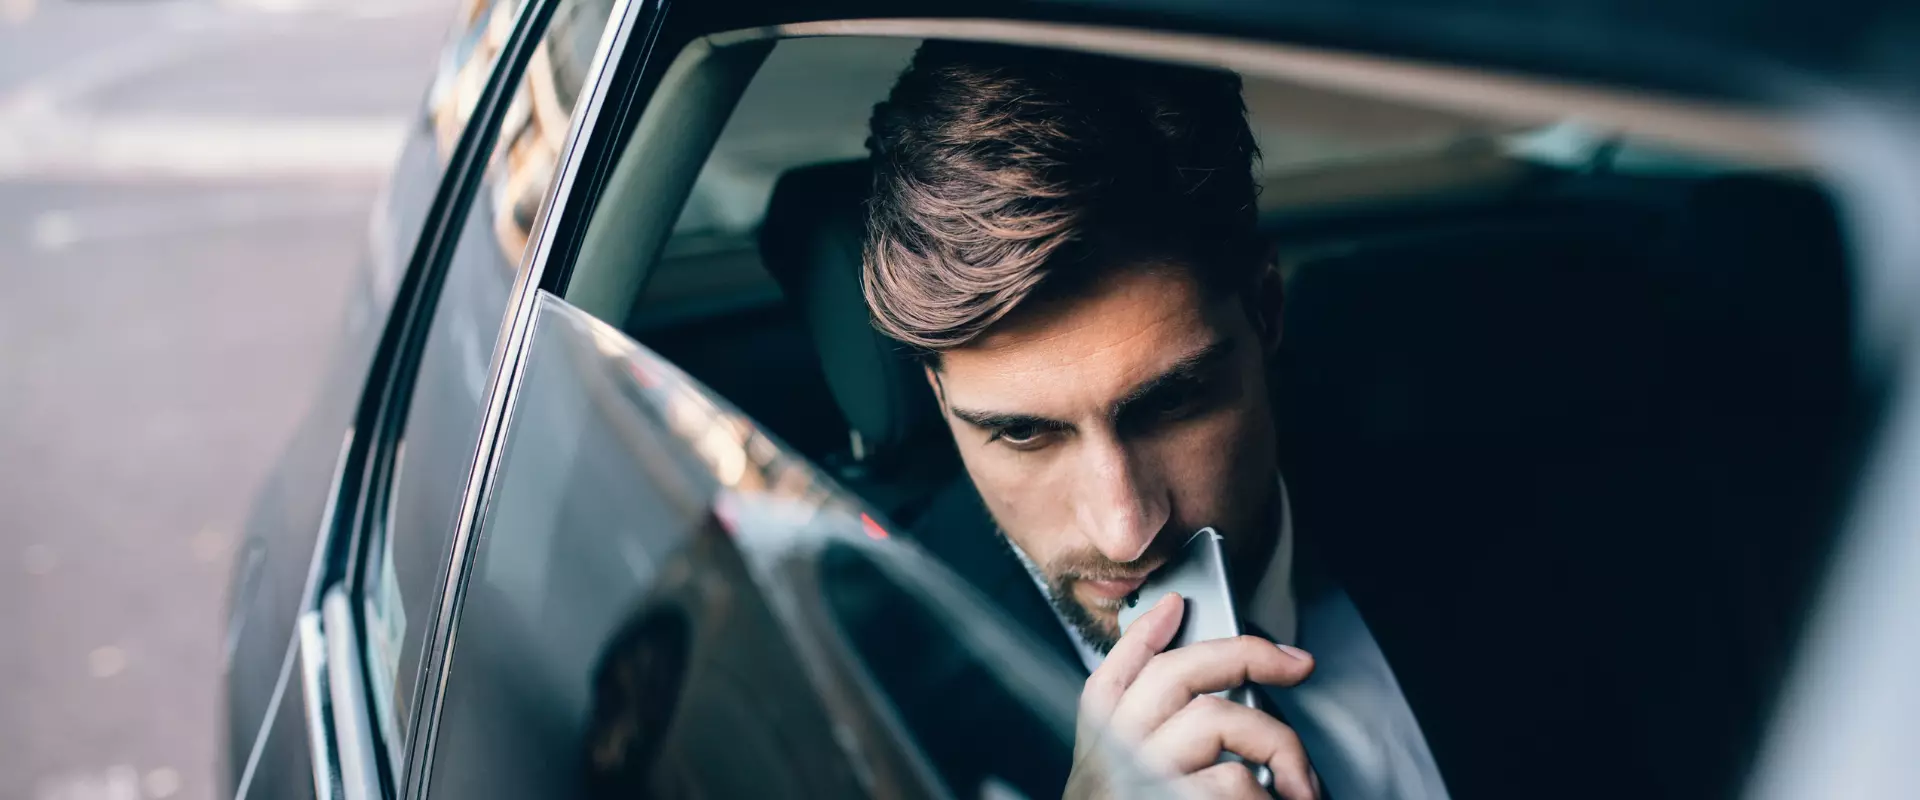 Ein Mann mit ernster Miene blickt auf sein Telefon, während er auf dem Rücksitz eines Autos sitzt und die Customer Journey für sein B2B-Unternehmen analysiert.